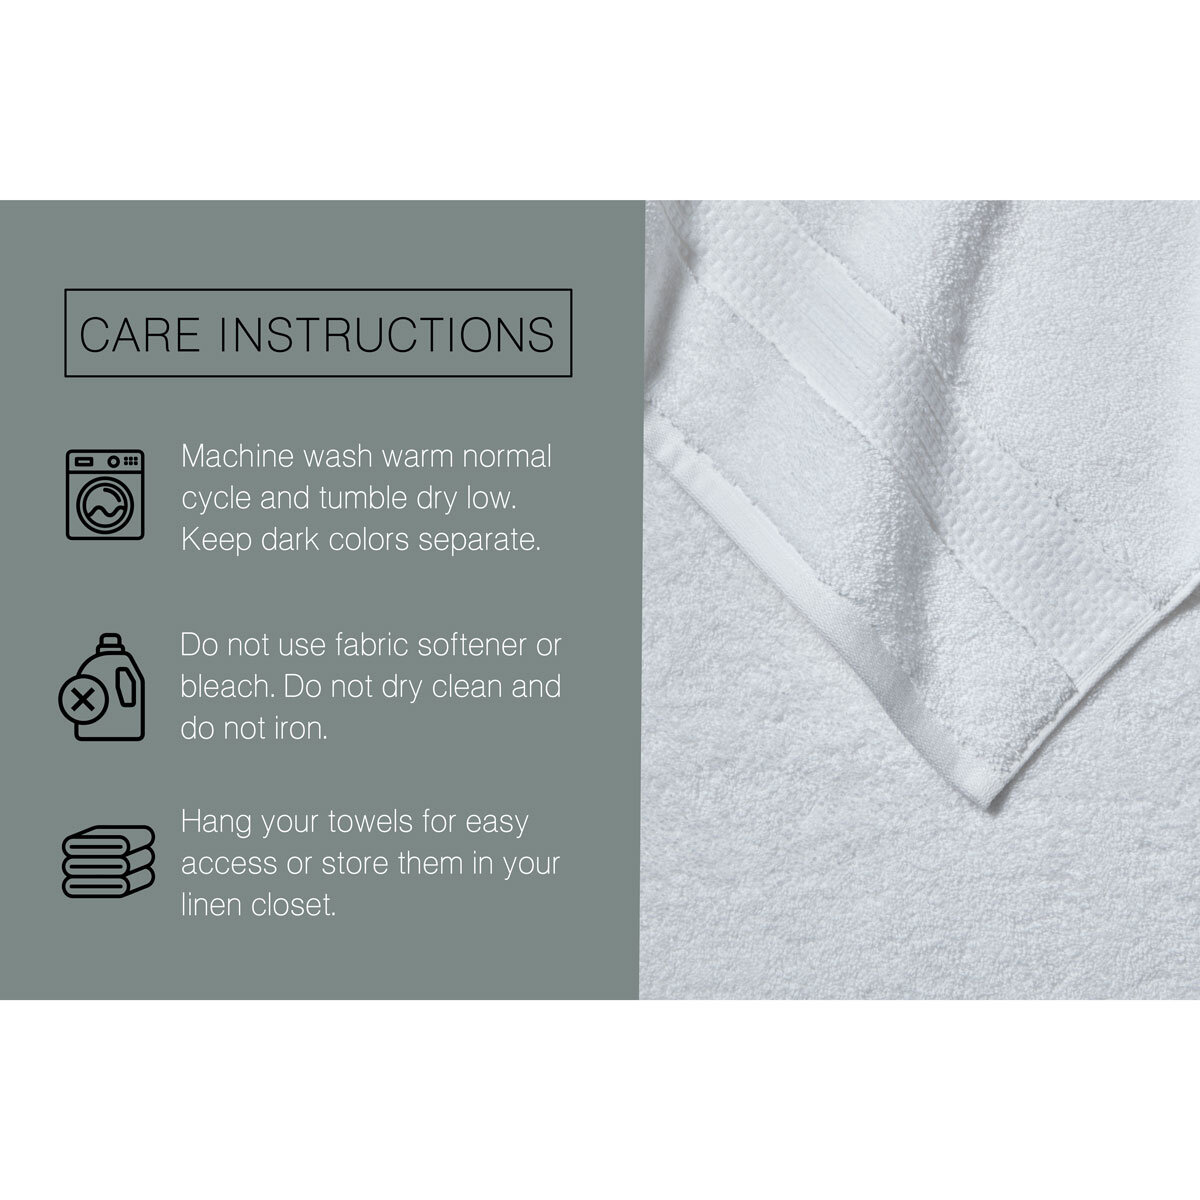 Grandeur 100% Hygro Cotton Bath Towel, Grey